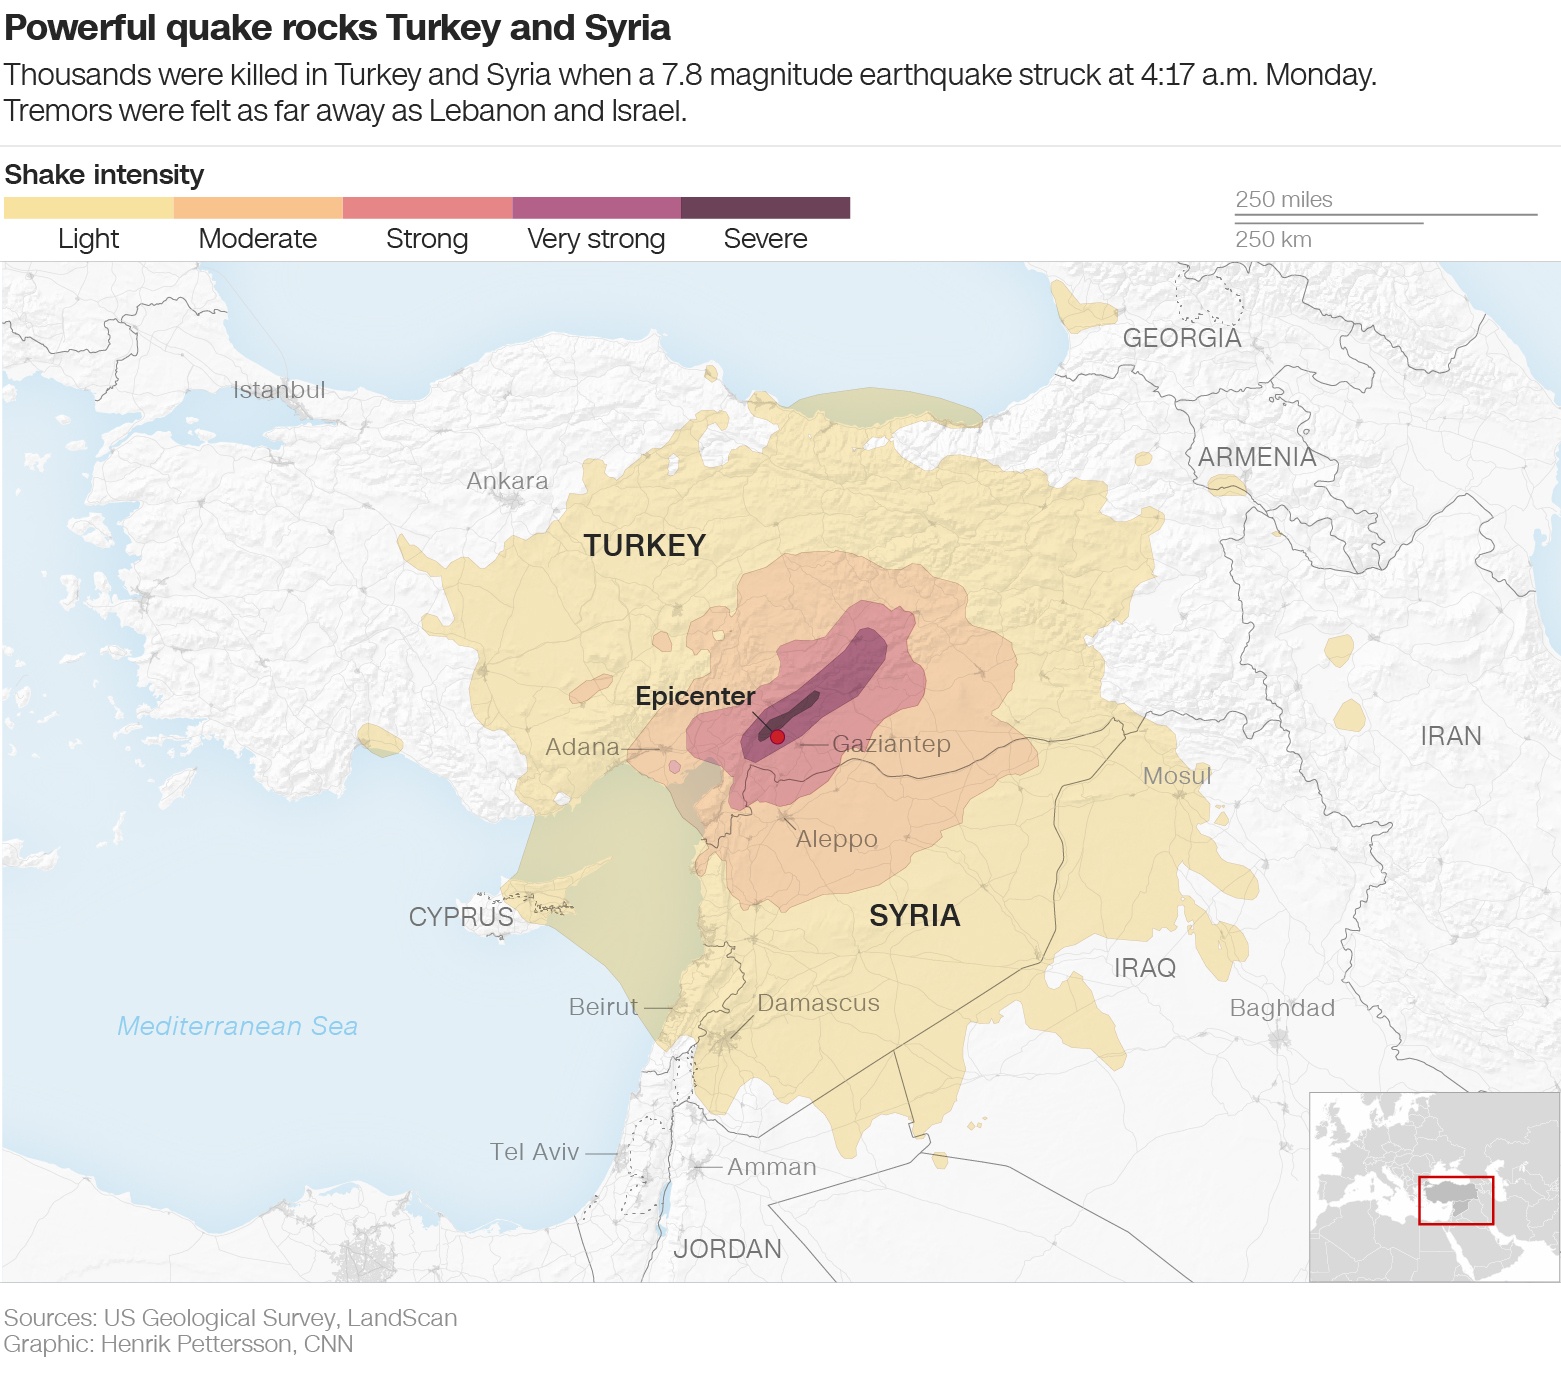 Тысячи погибших людей и разрушенных зданий. Что известно о крупном землетрясении в Турции и Сирии